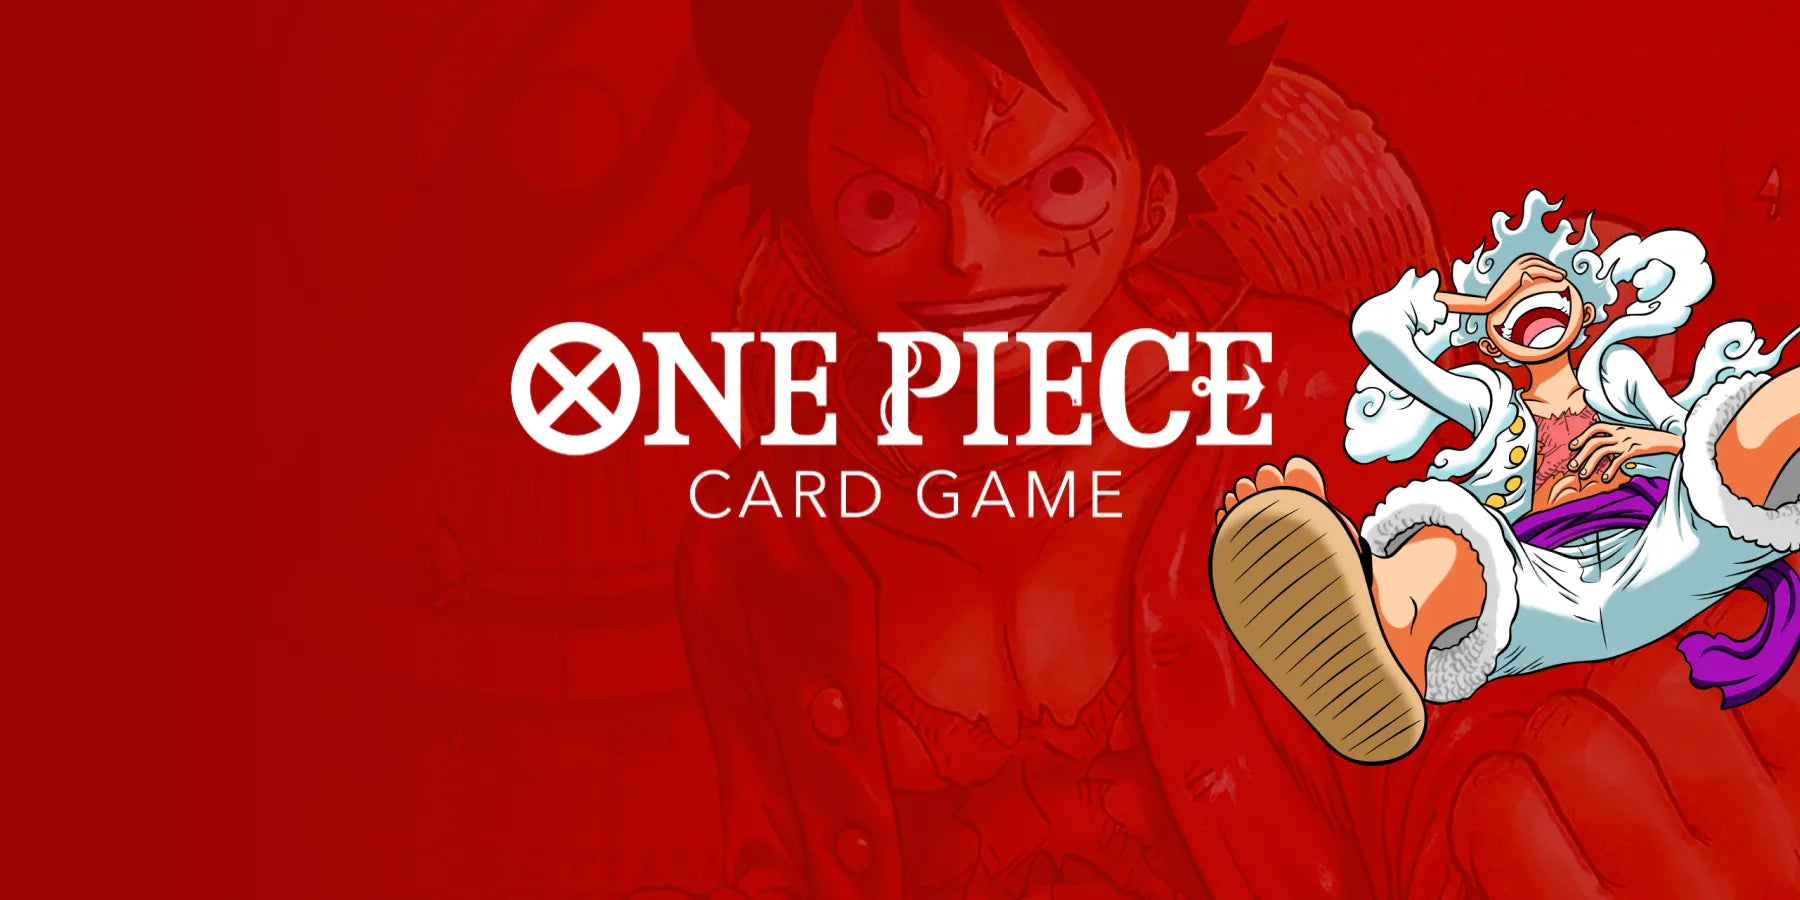 One Piece Card Game | Otakura.com